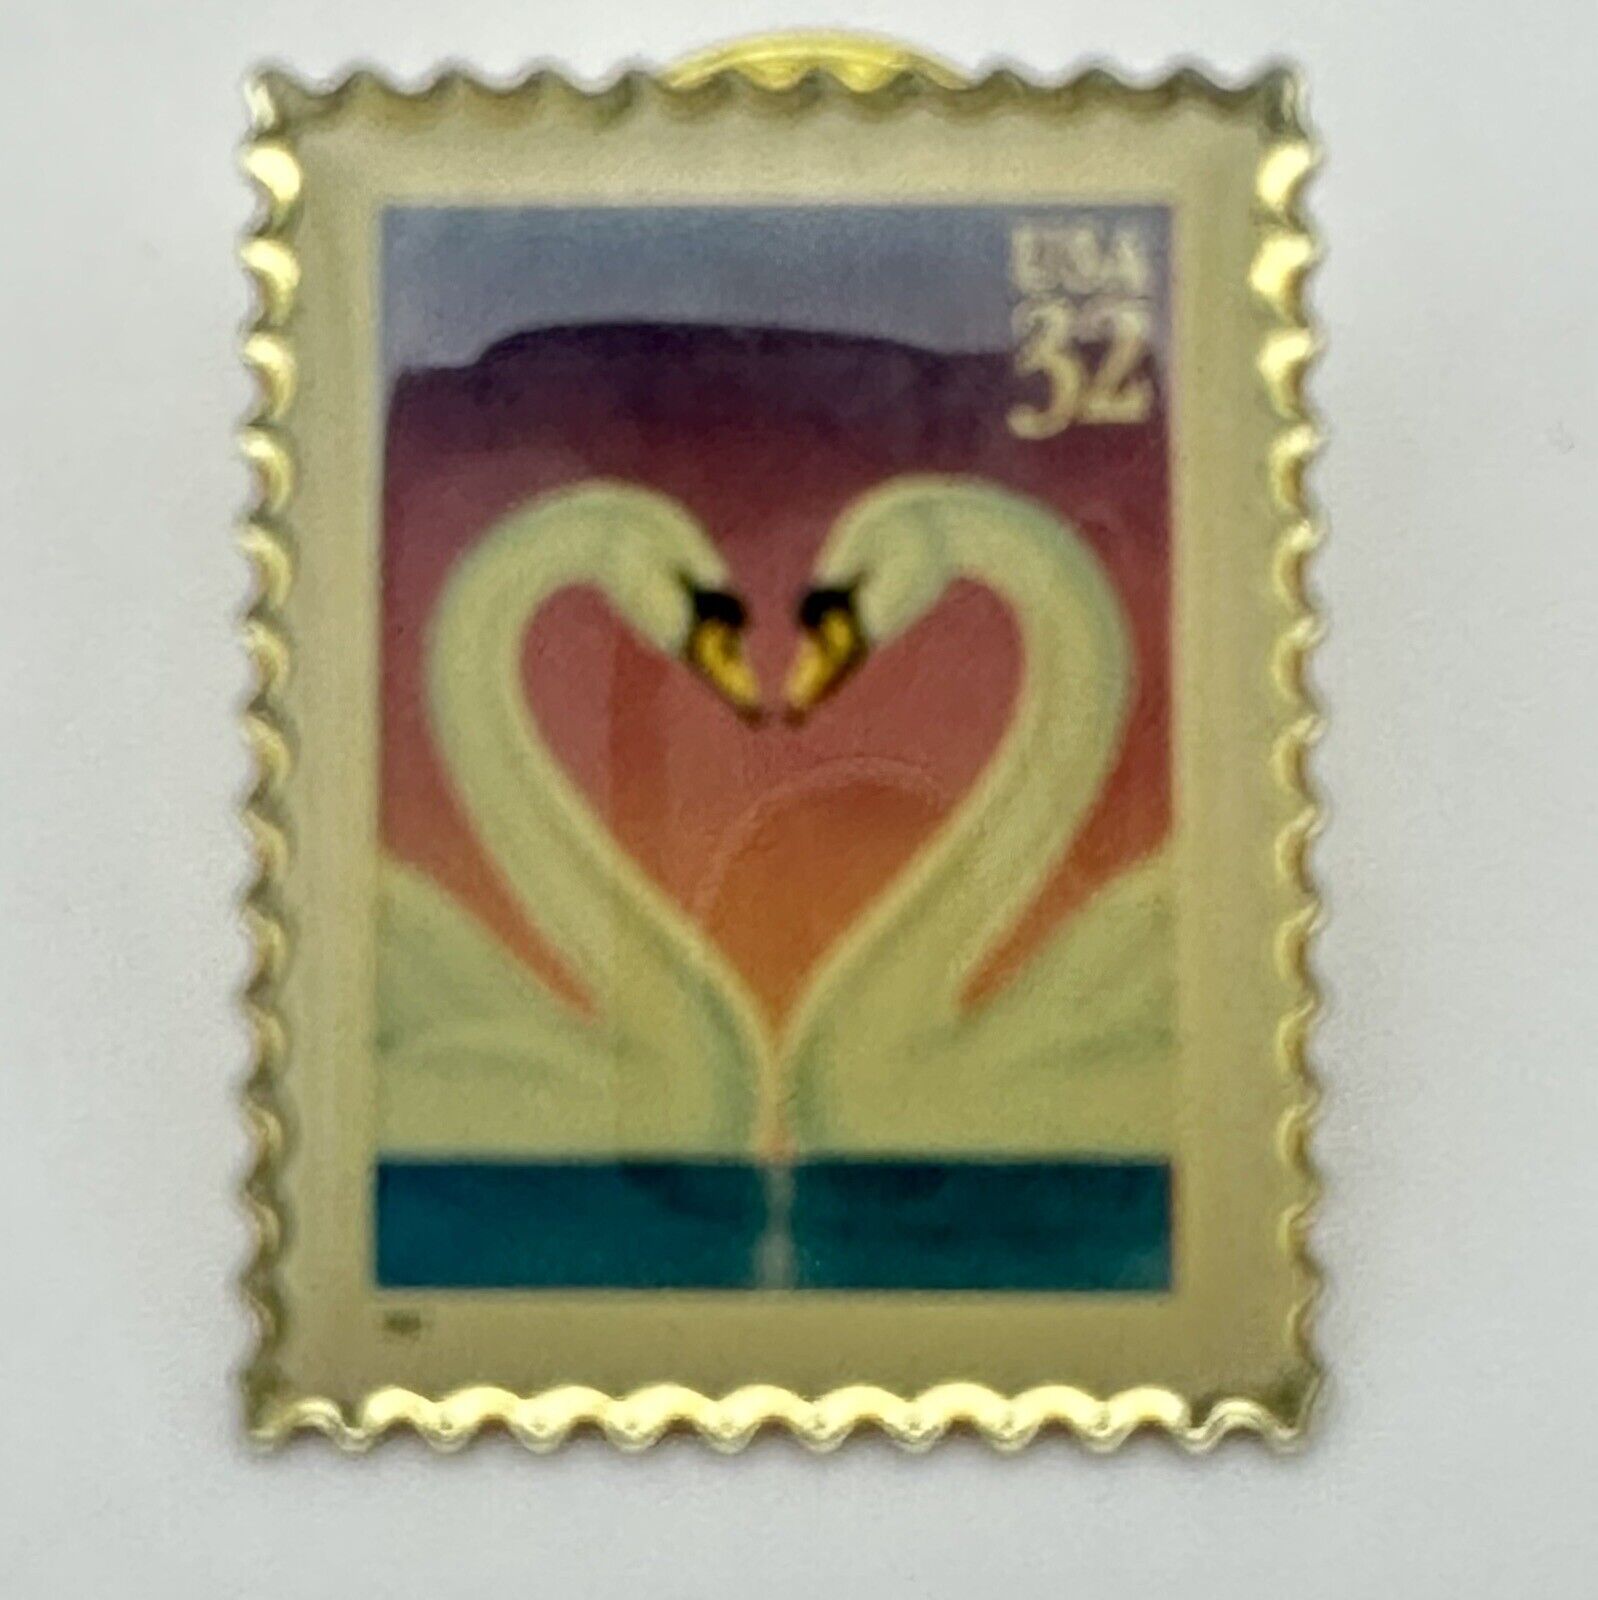 1997 USPS 32 Cent Version Love Swan Pin USA Metal Lapel Stamp